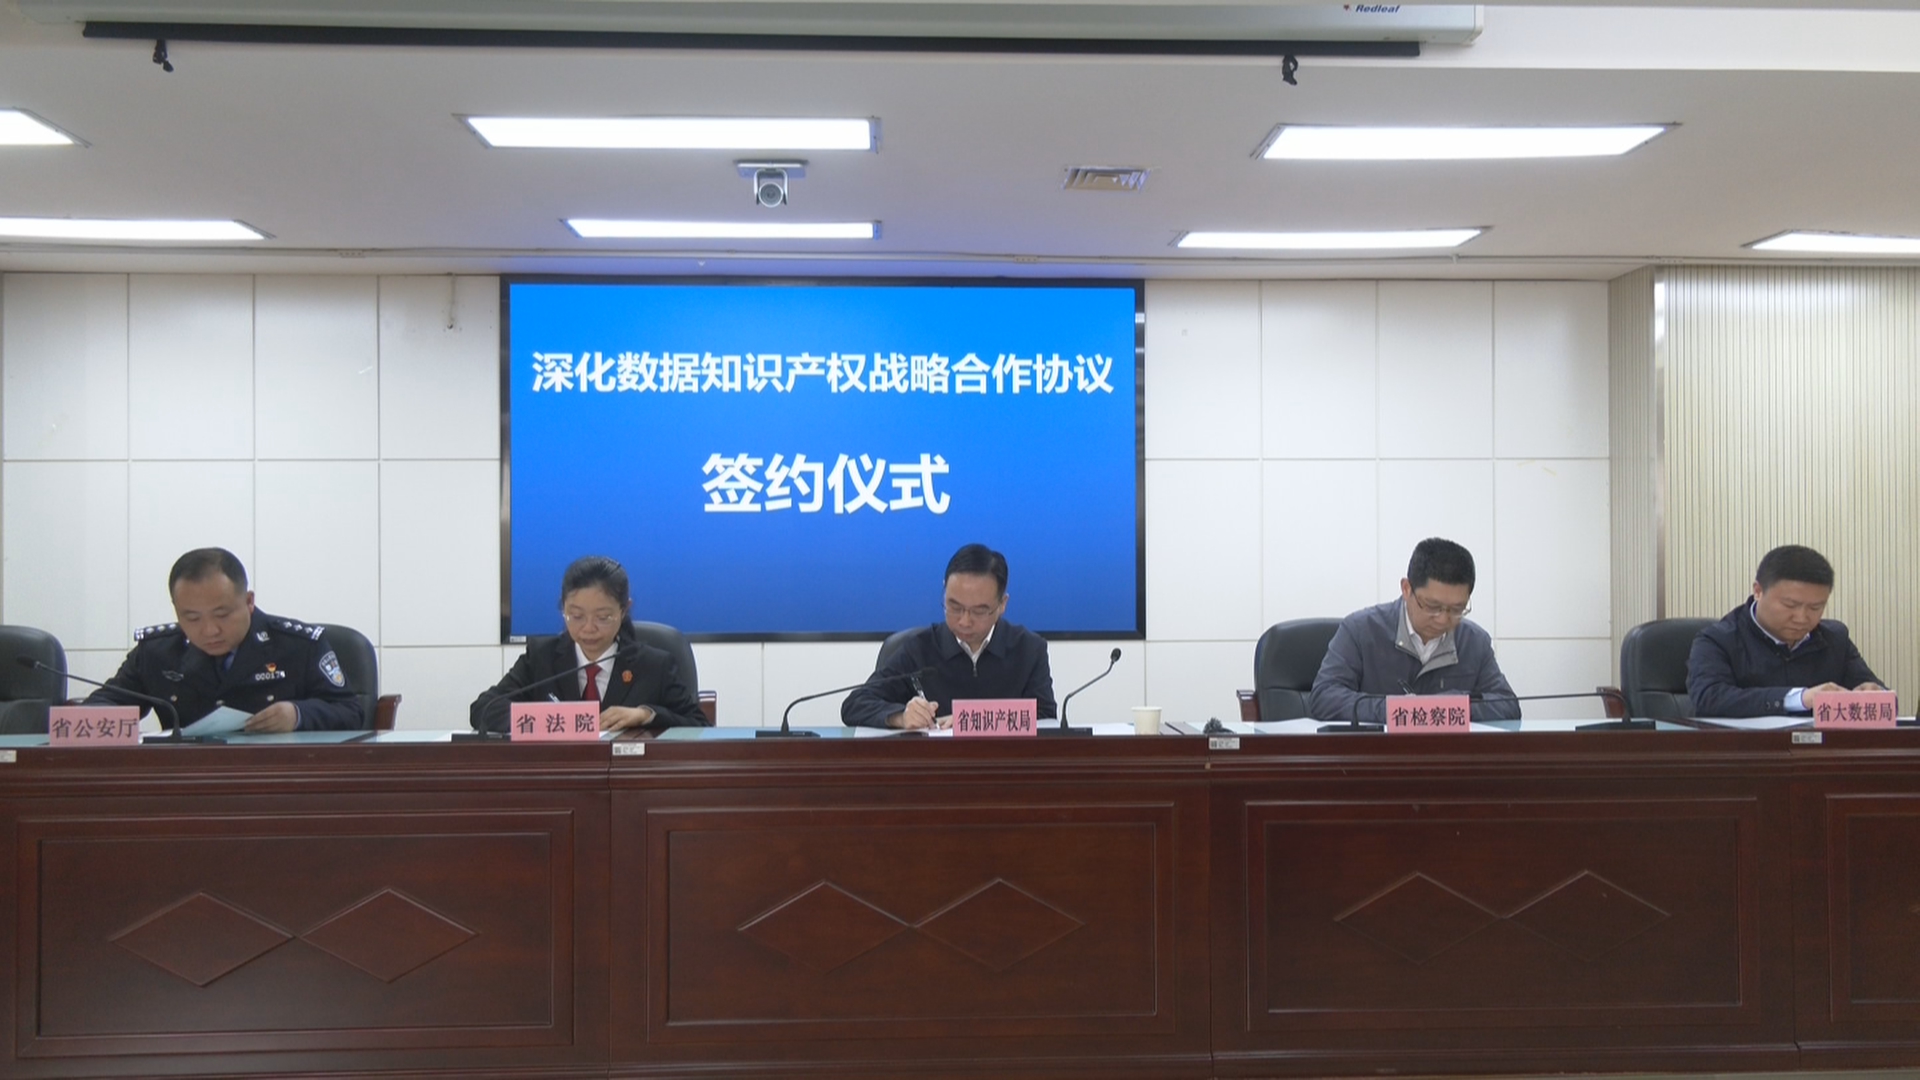 贵州新闻联播丨五部门签署战略合作协议 携手推进数据知识产权保护工作